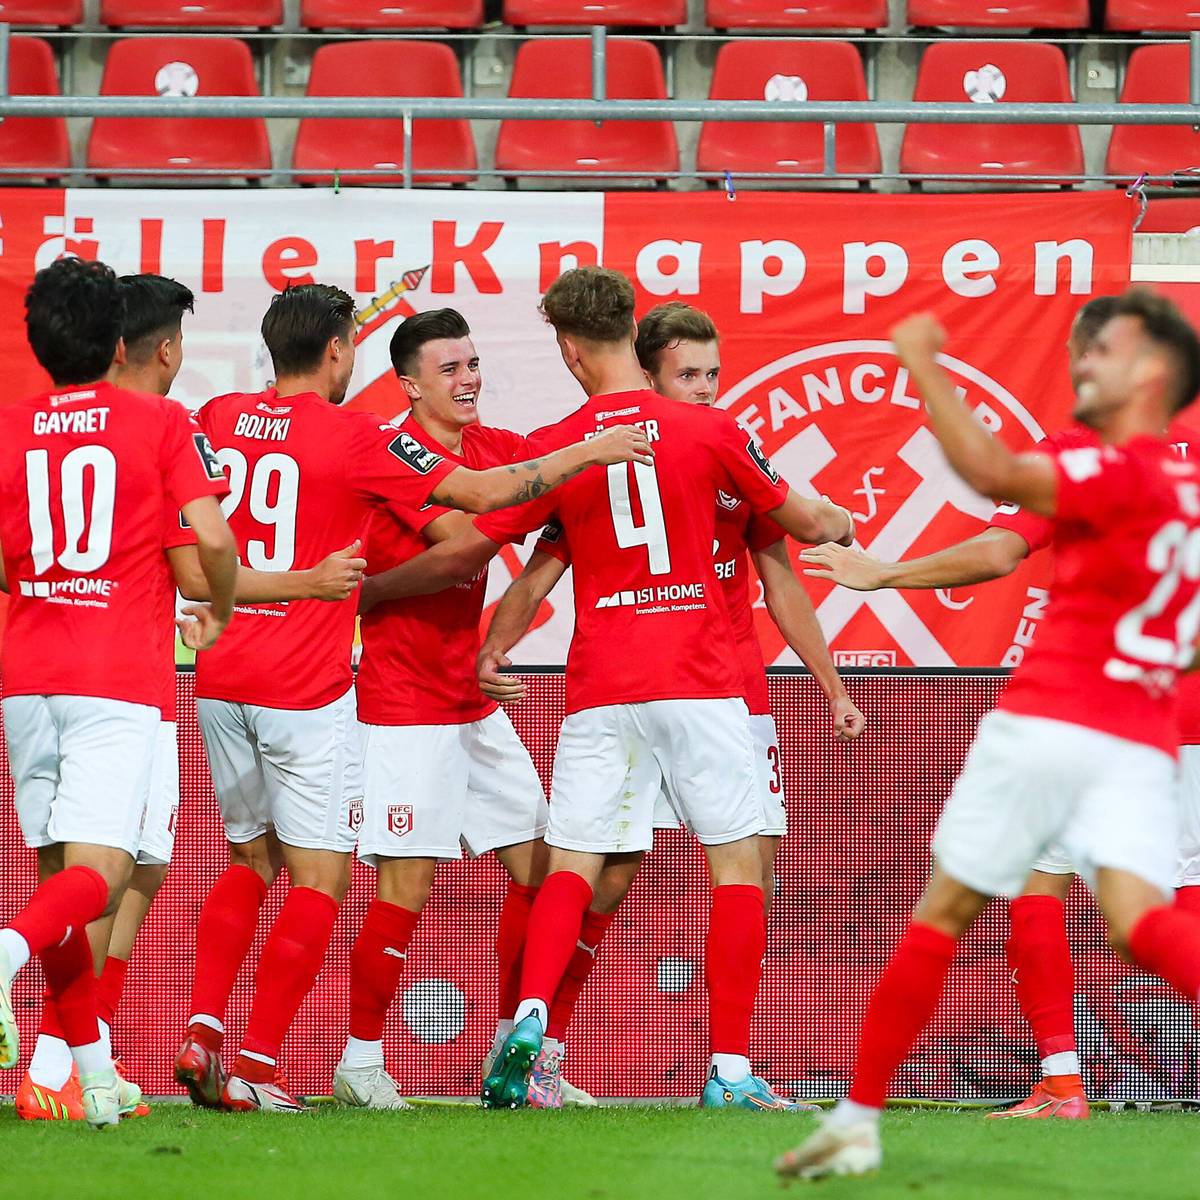 Erster Sieg im vierten Spiel: Der Hallesche FC hat nach seinem schlechten Saisonstart in der 3. Fußball-Liga den ersten Erfolg verbucht.